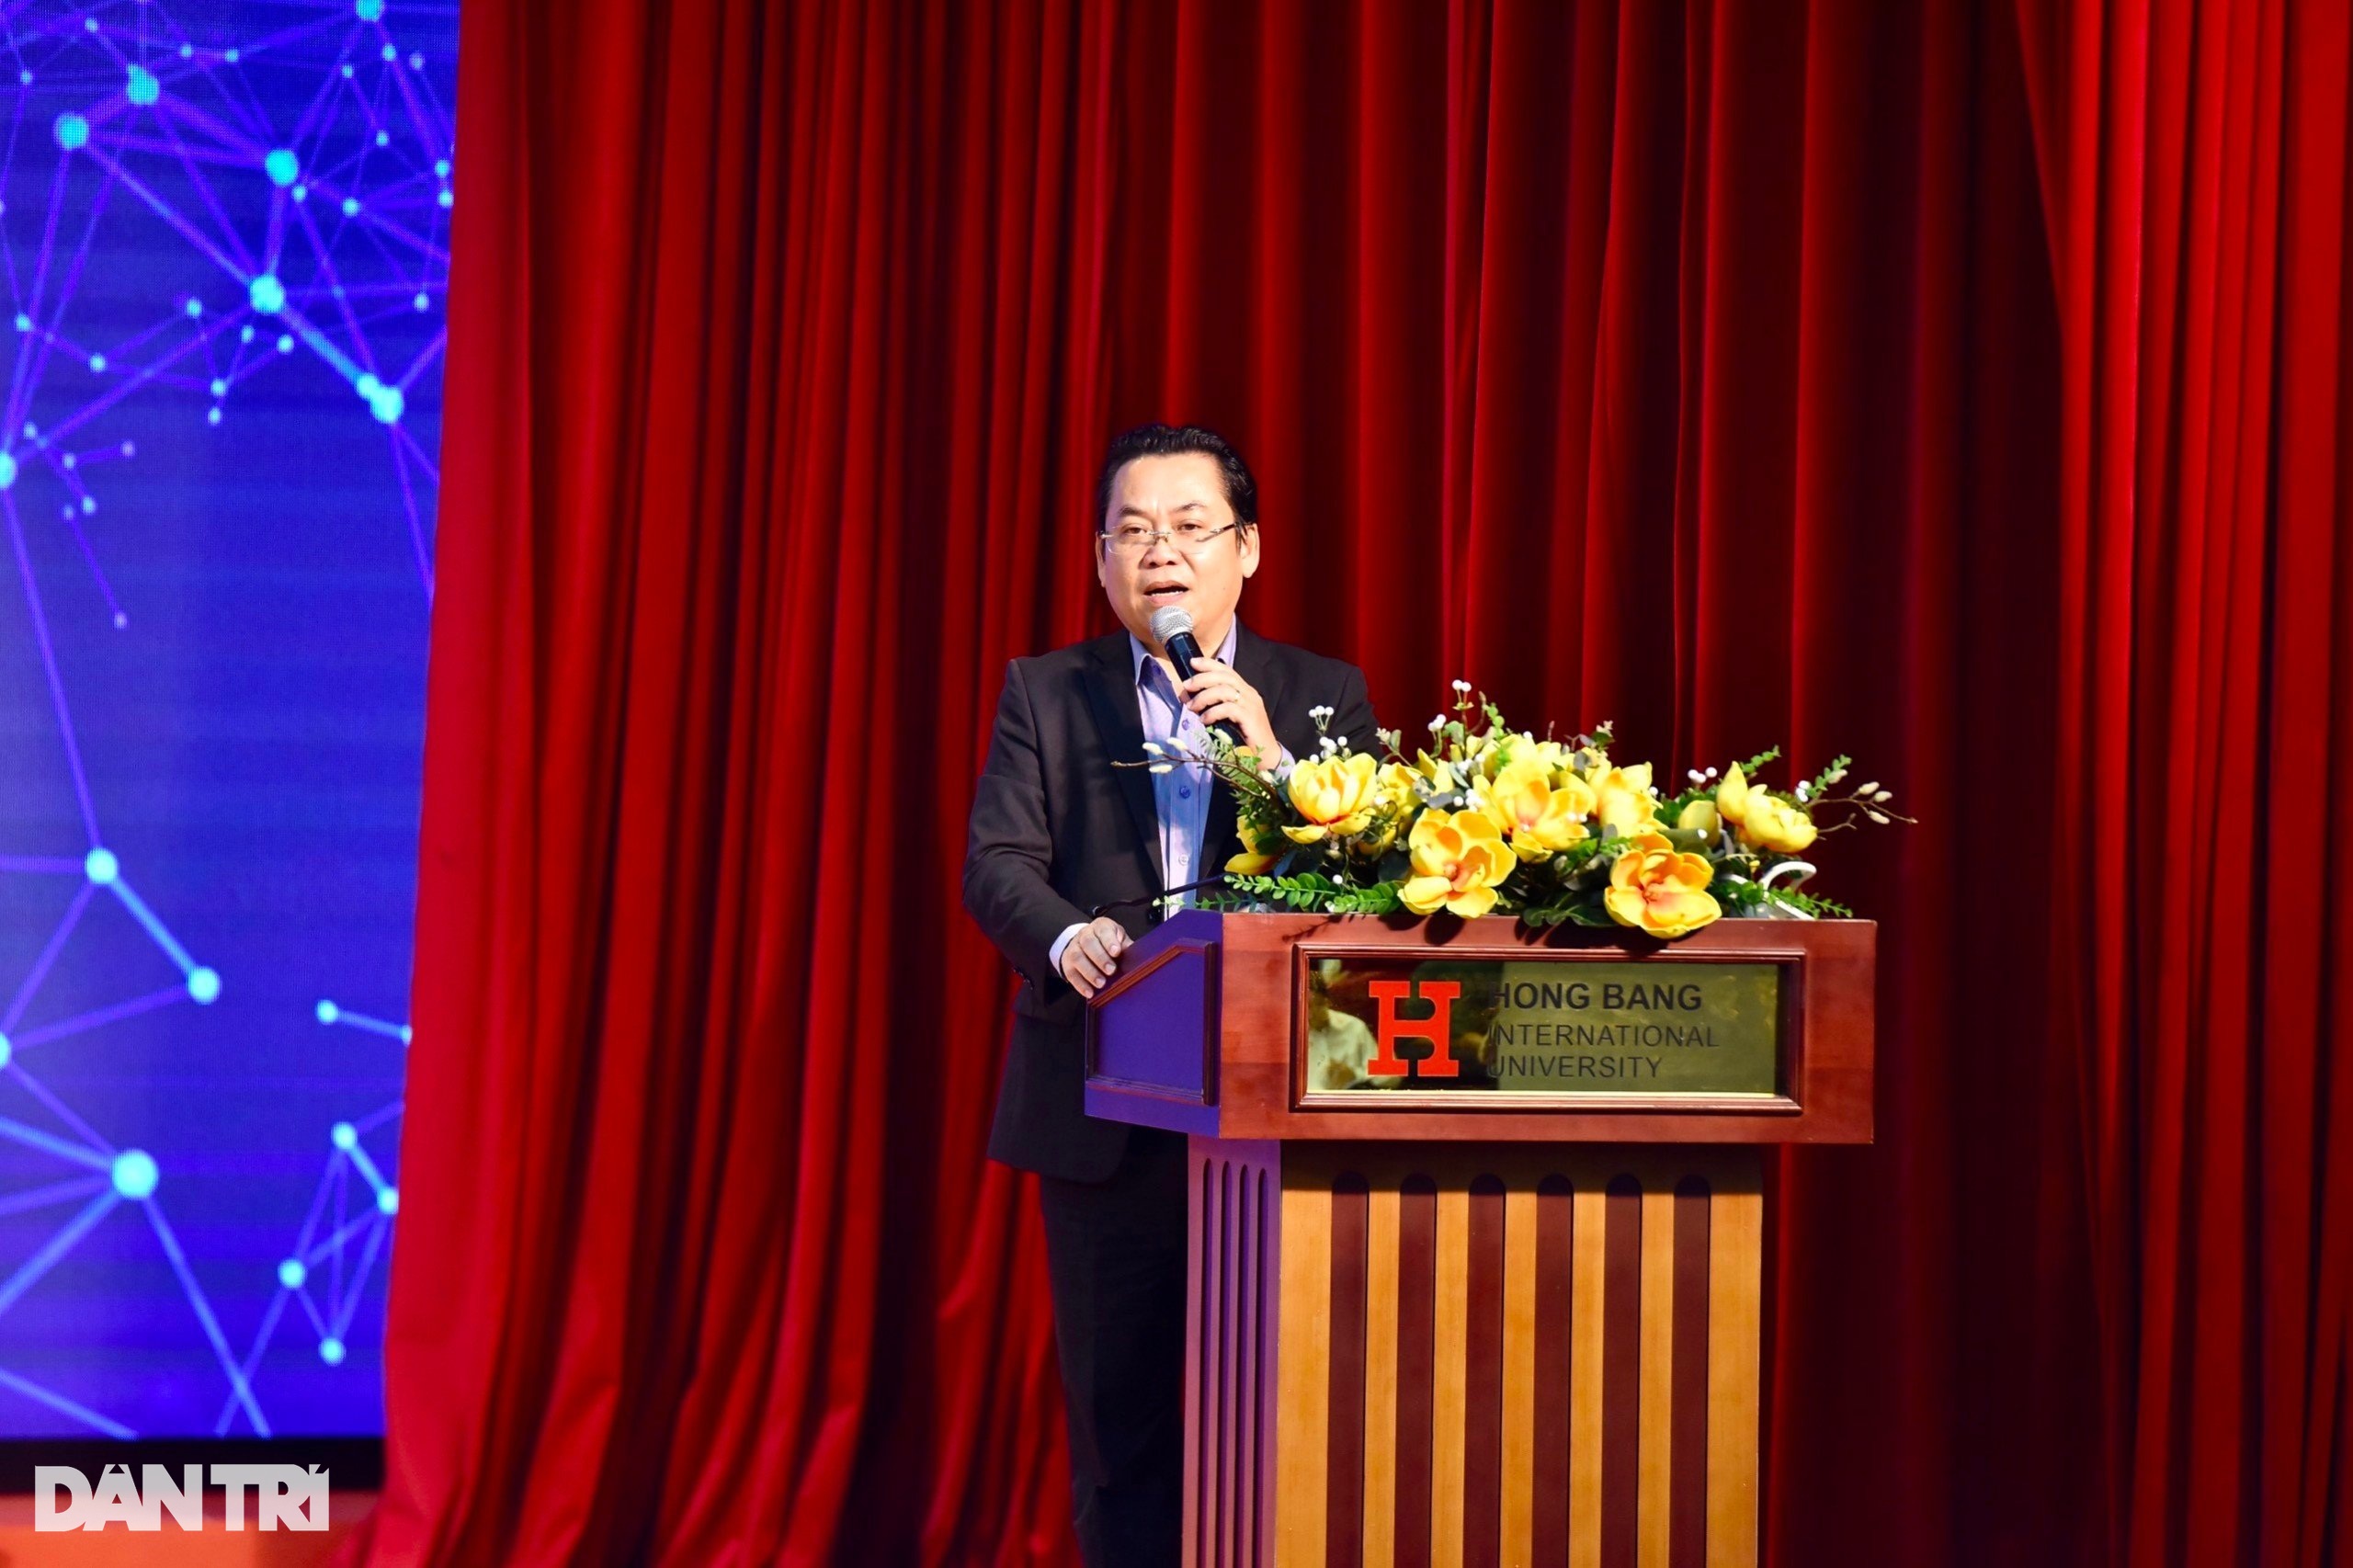 Phó hiệu trưởng Trường Đại học Quốc tế Hồng Bàng – PGS.TS. Nguyễn Hữu Huy Nhựt (Ảnh: BTC).